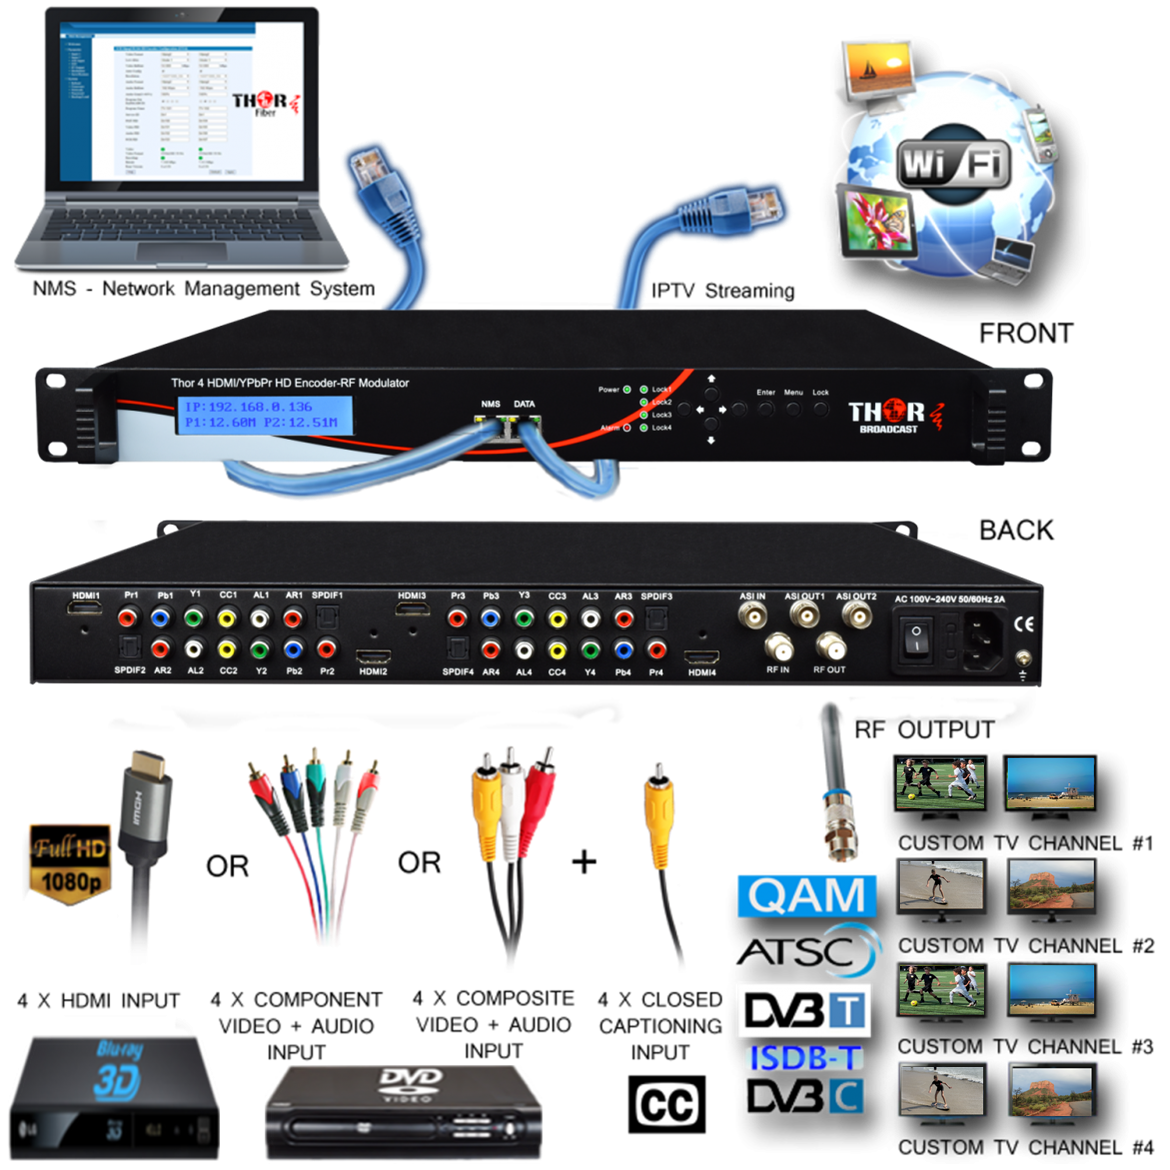 FMUSER FUTV4622 DVB-T MPEG-4 AVC / H.264 Modulador codificador HD  (sintonizador, entrada HDMI; salida RF) con actualización USB para uso  doméstico